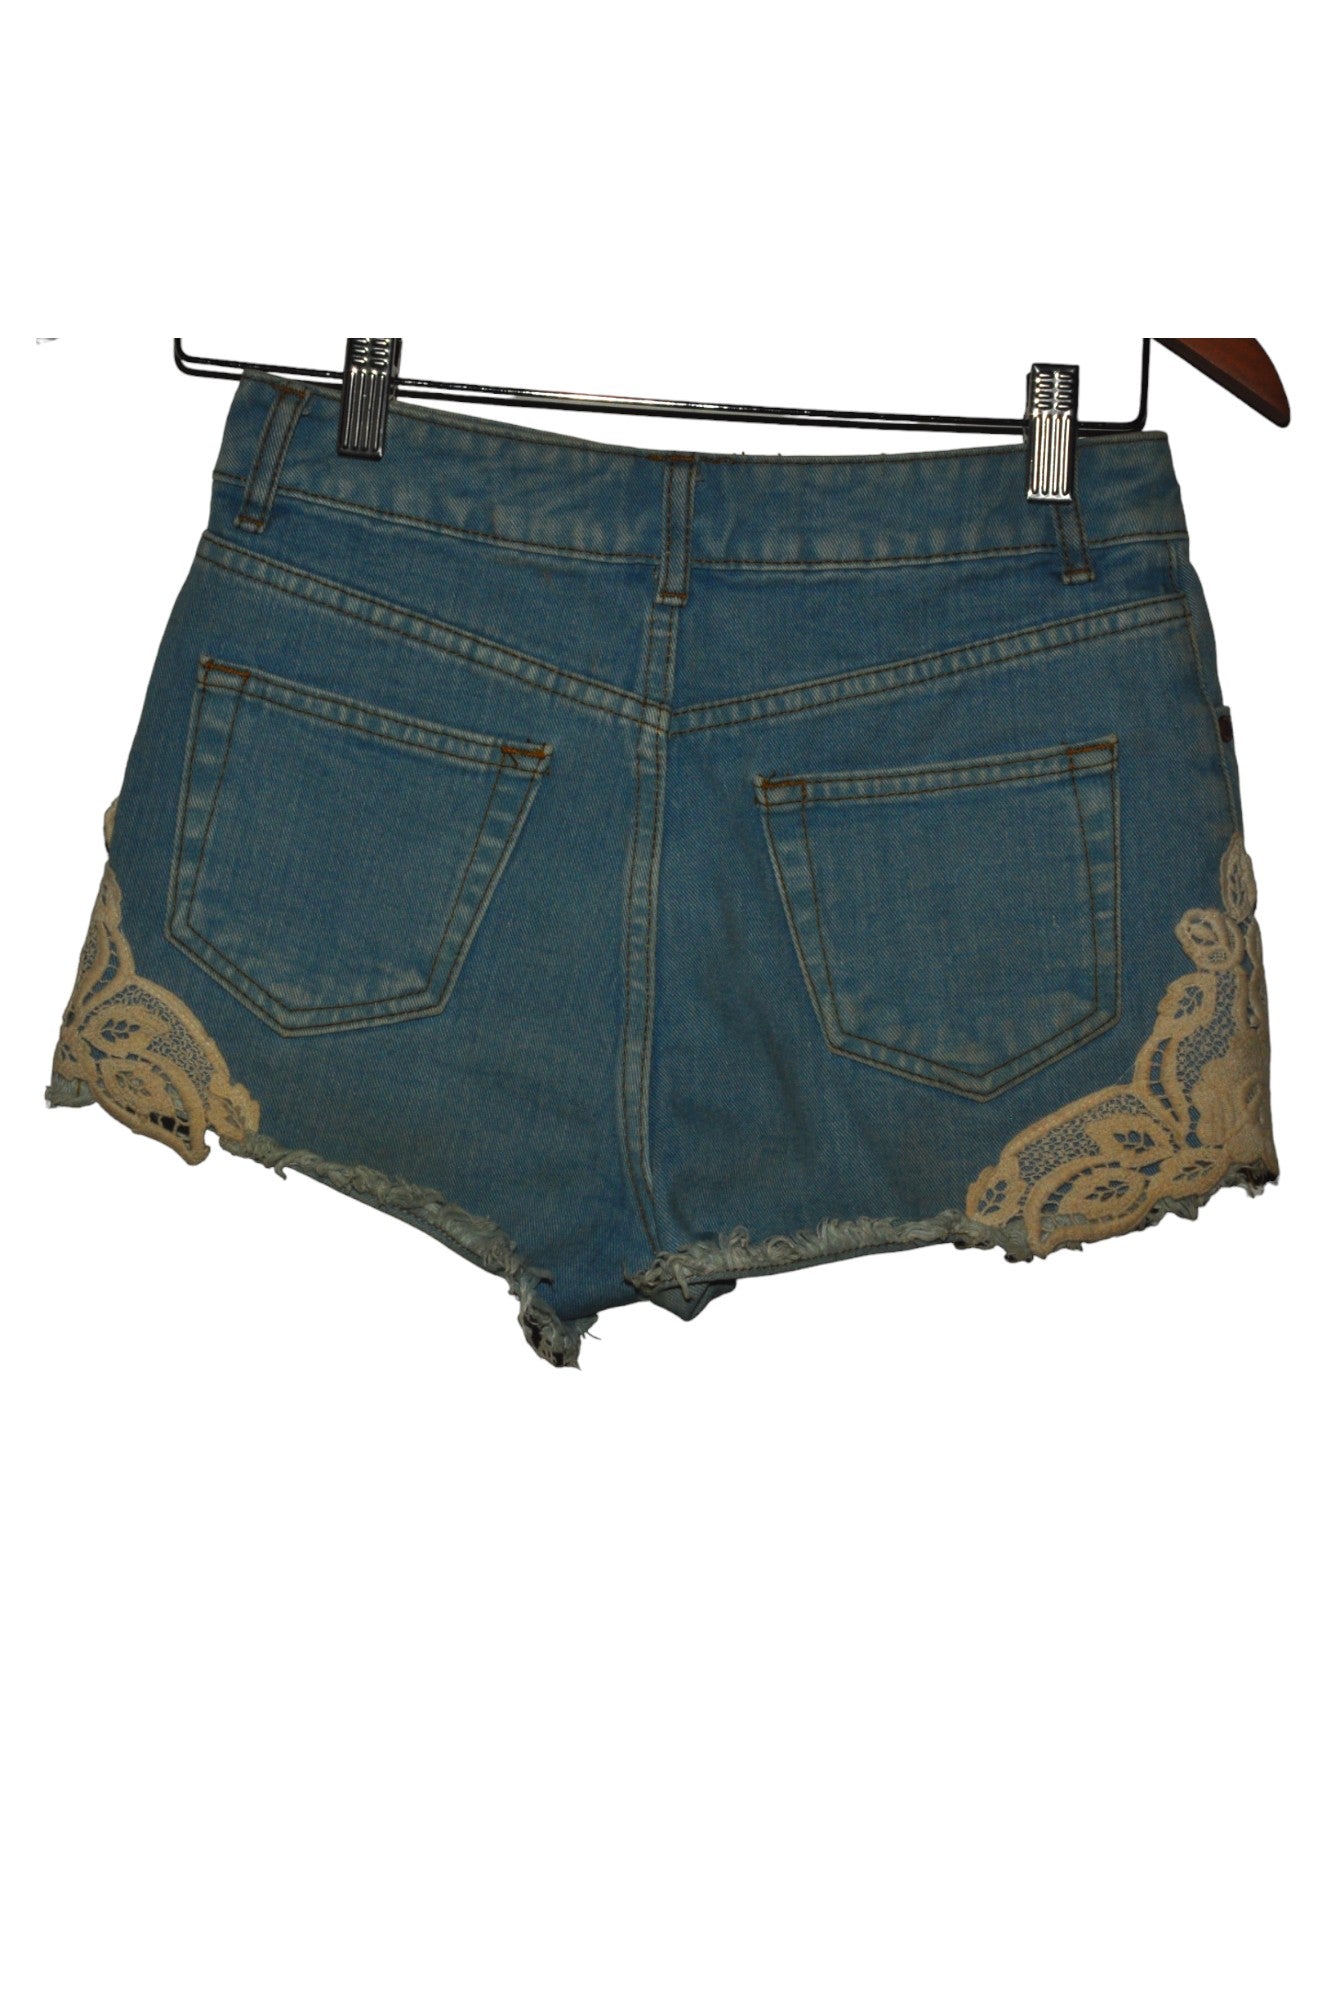 MISS SELFRIDGE Women Denim Shorts Regular fit in Blue - Size 8 | 10.49 $ KOOP